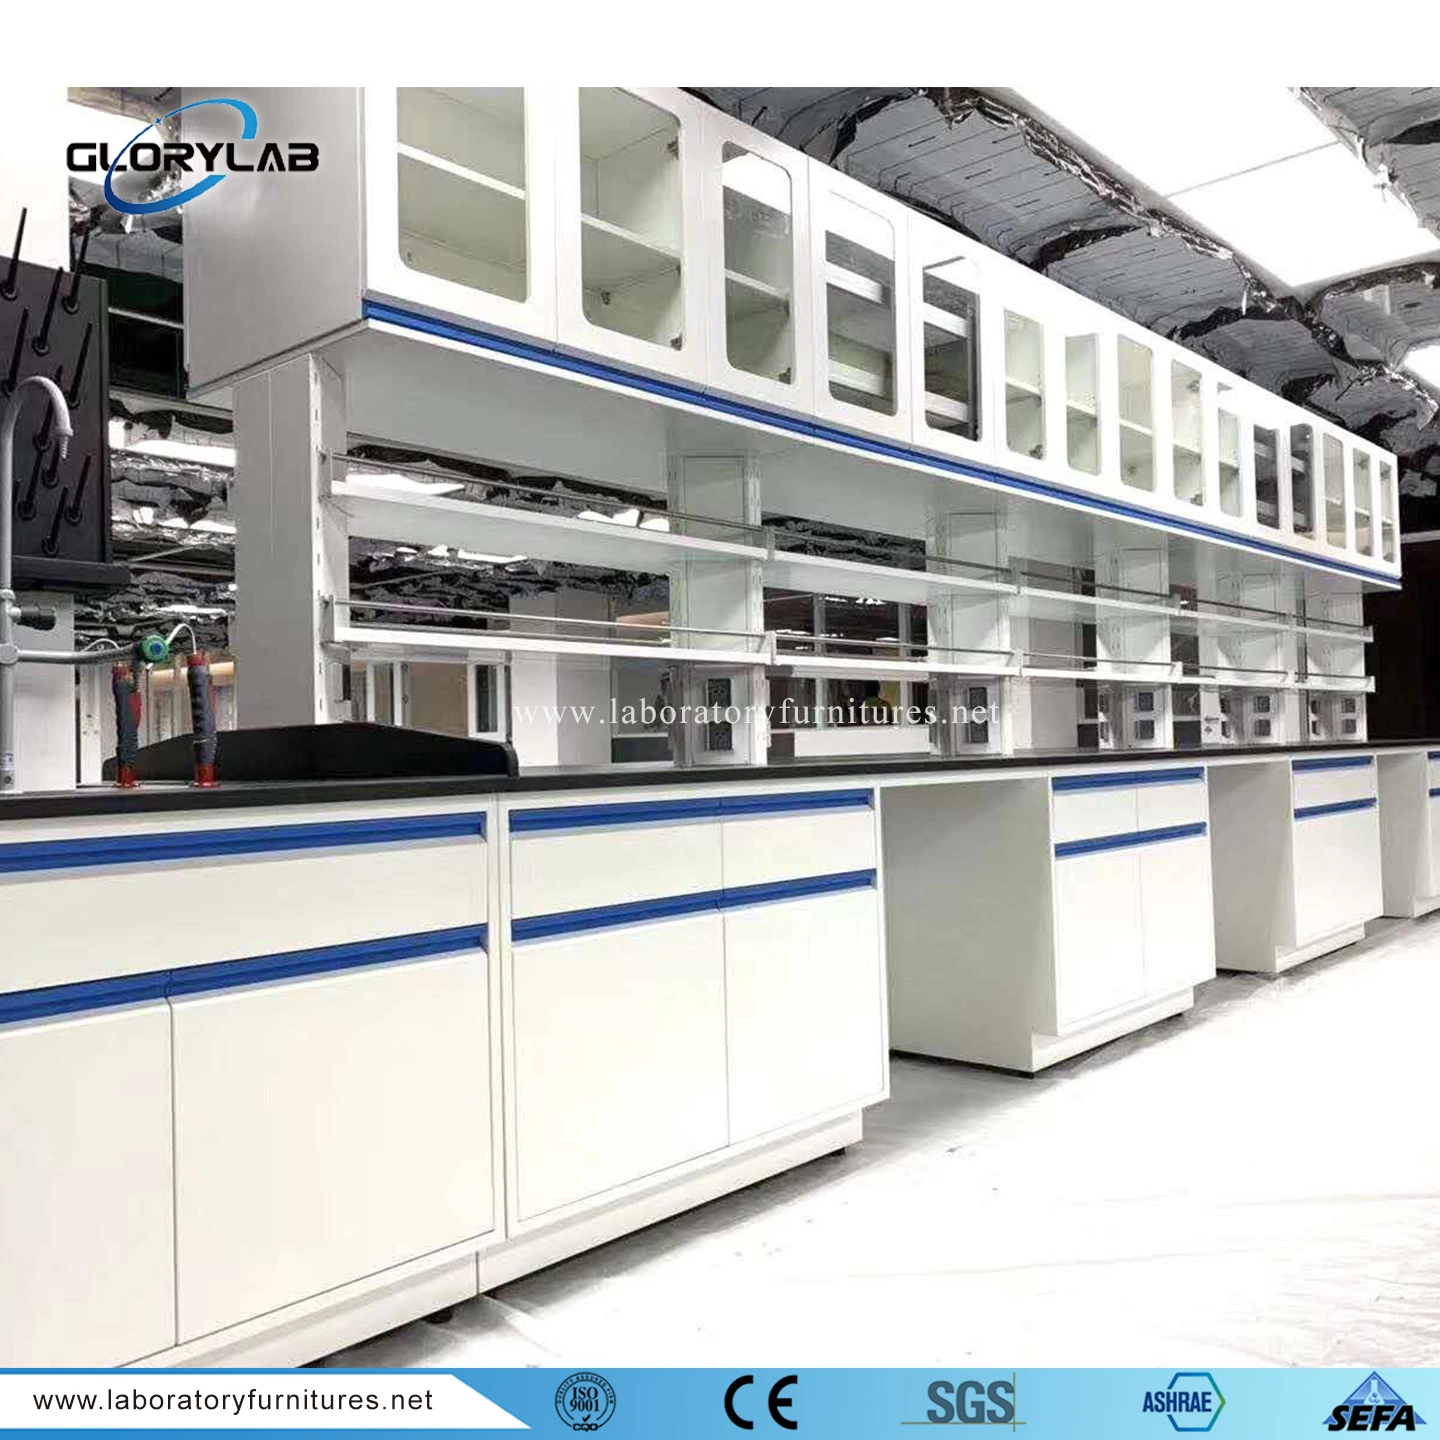 Sefa 8 m padrão-2016 Mobiliário de laboratório de aço resistente a produtos químicos em diferentes laboratórios.